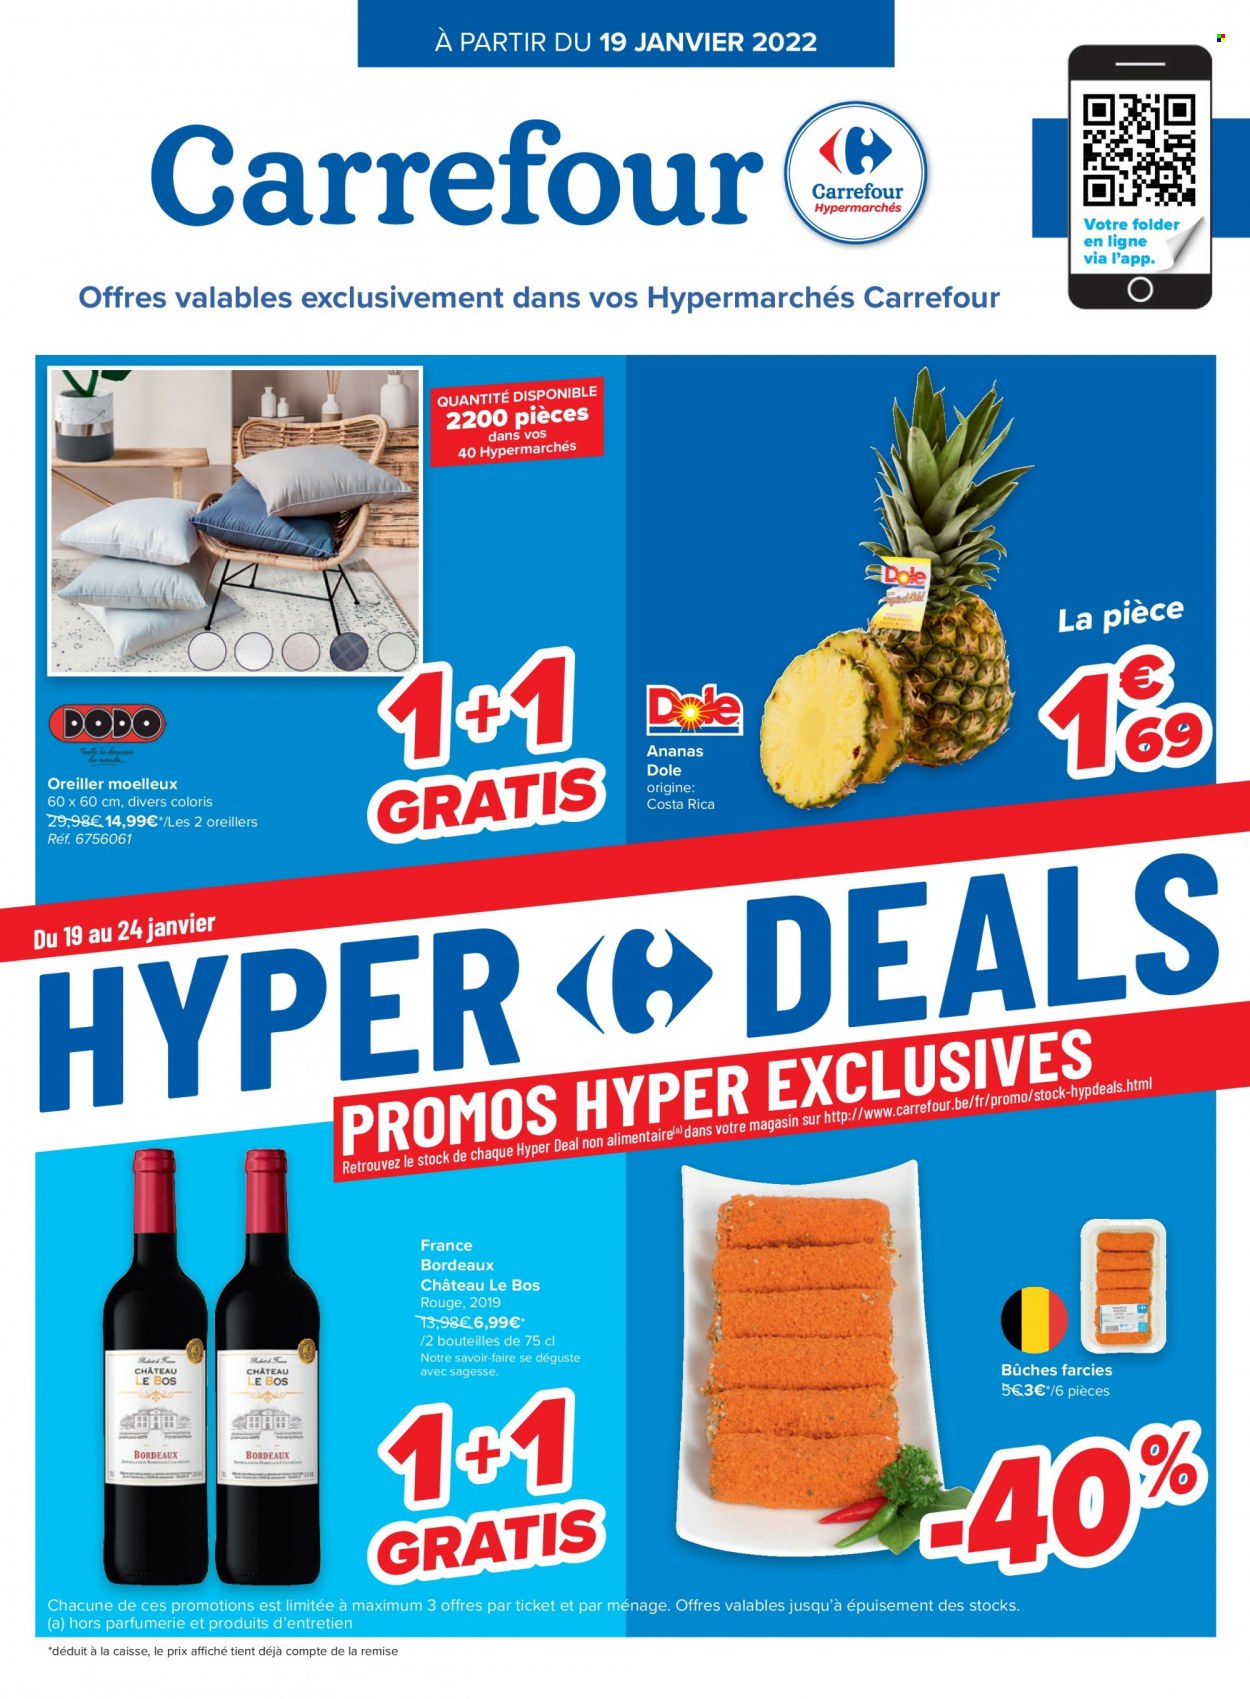 thumbnail - Catalogue Carrefour hypermarkt - 19/01/2022 - 31/01/2022 - Produits soldés - vin rouge, Bordeaux, oreiller. Page 1.